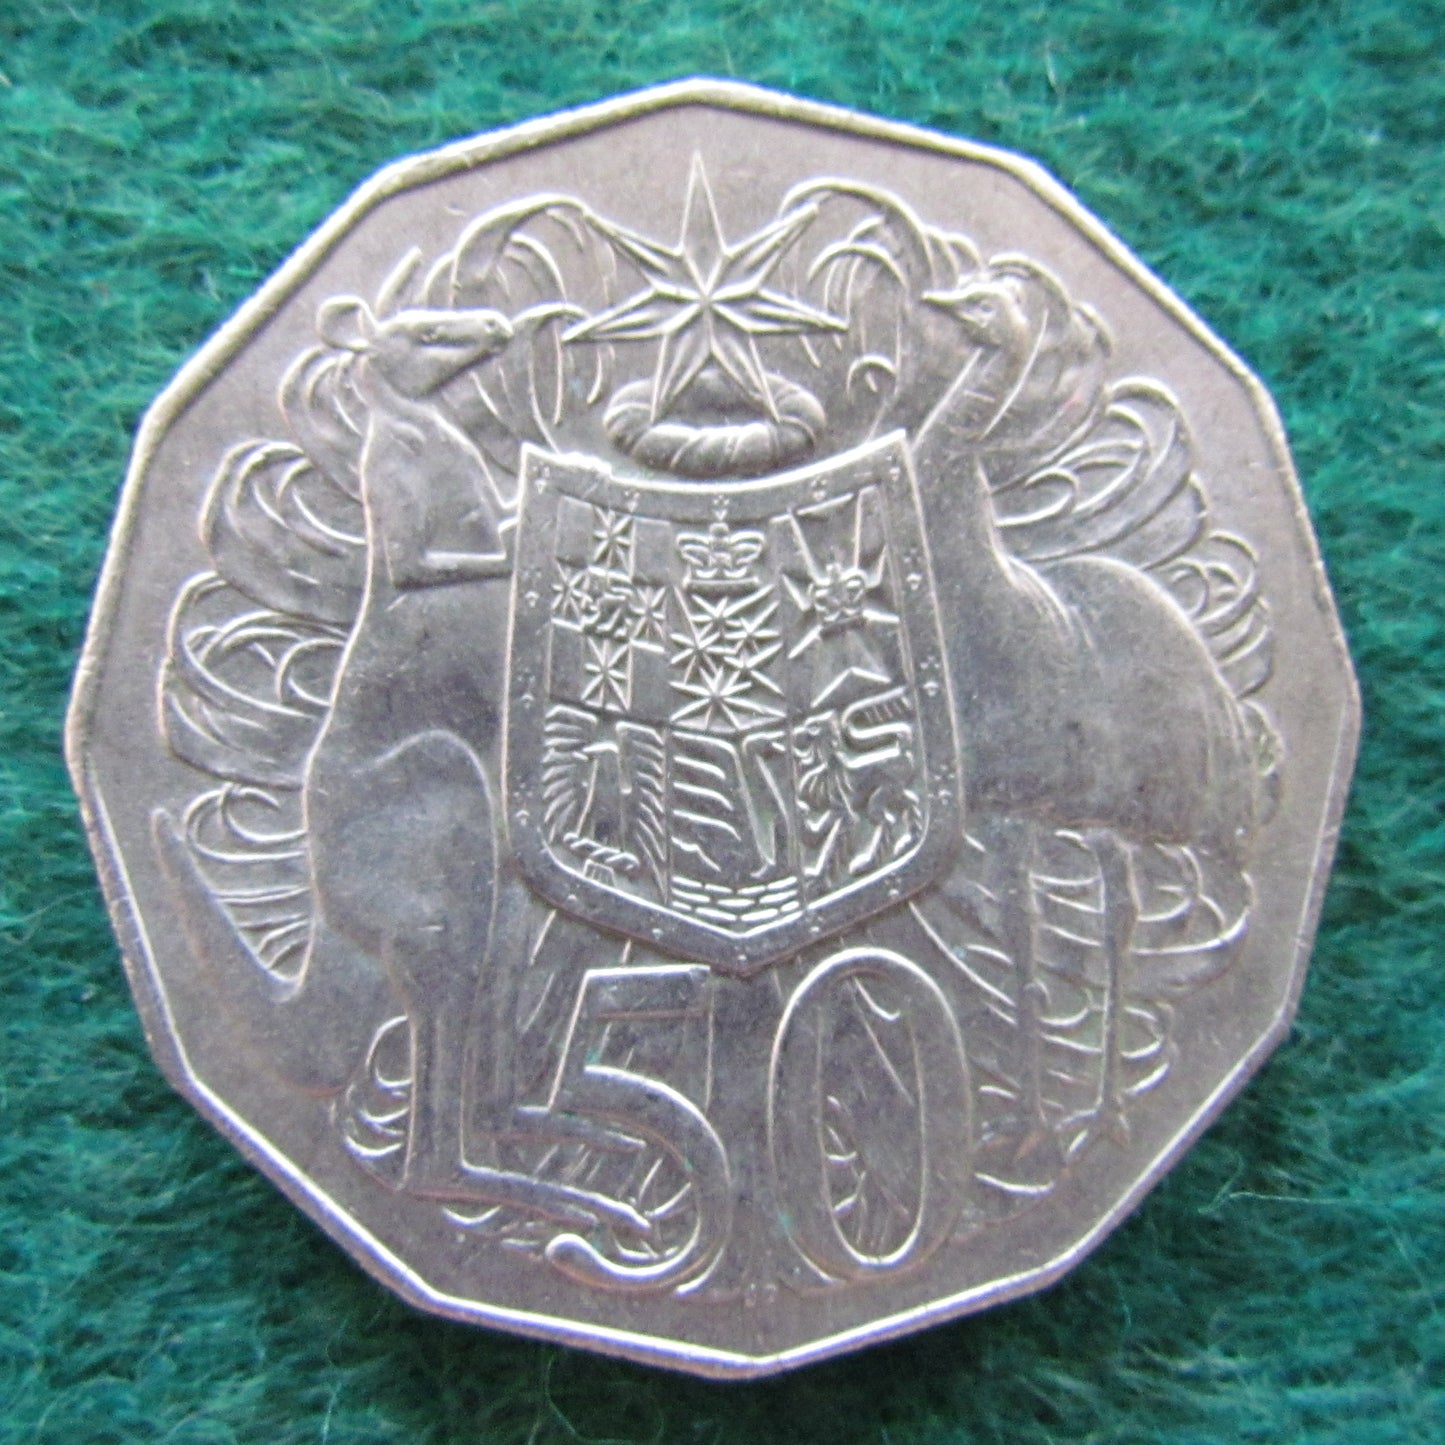 Australian 1969 50 Cent Queen Elizabeth COA Coin  - Circulated